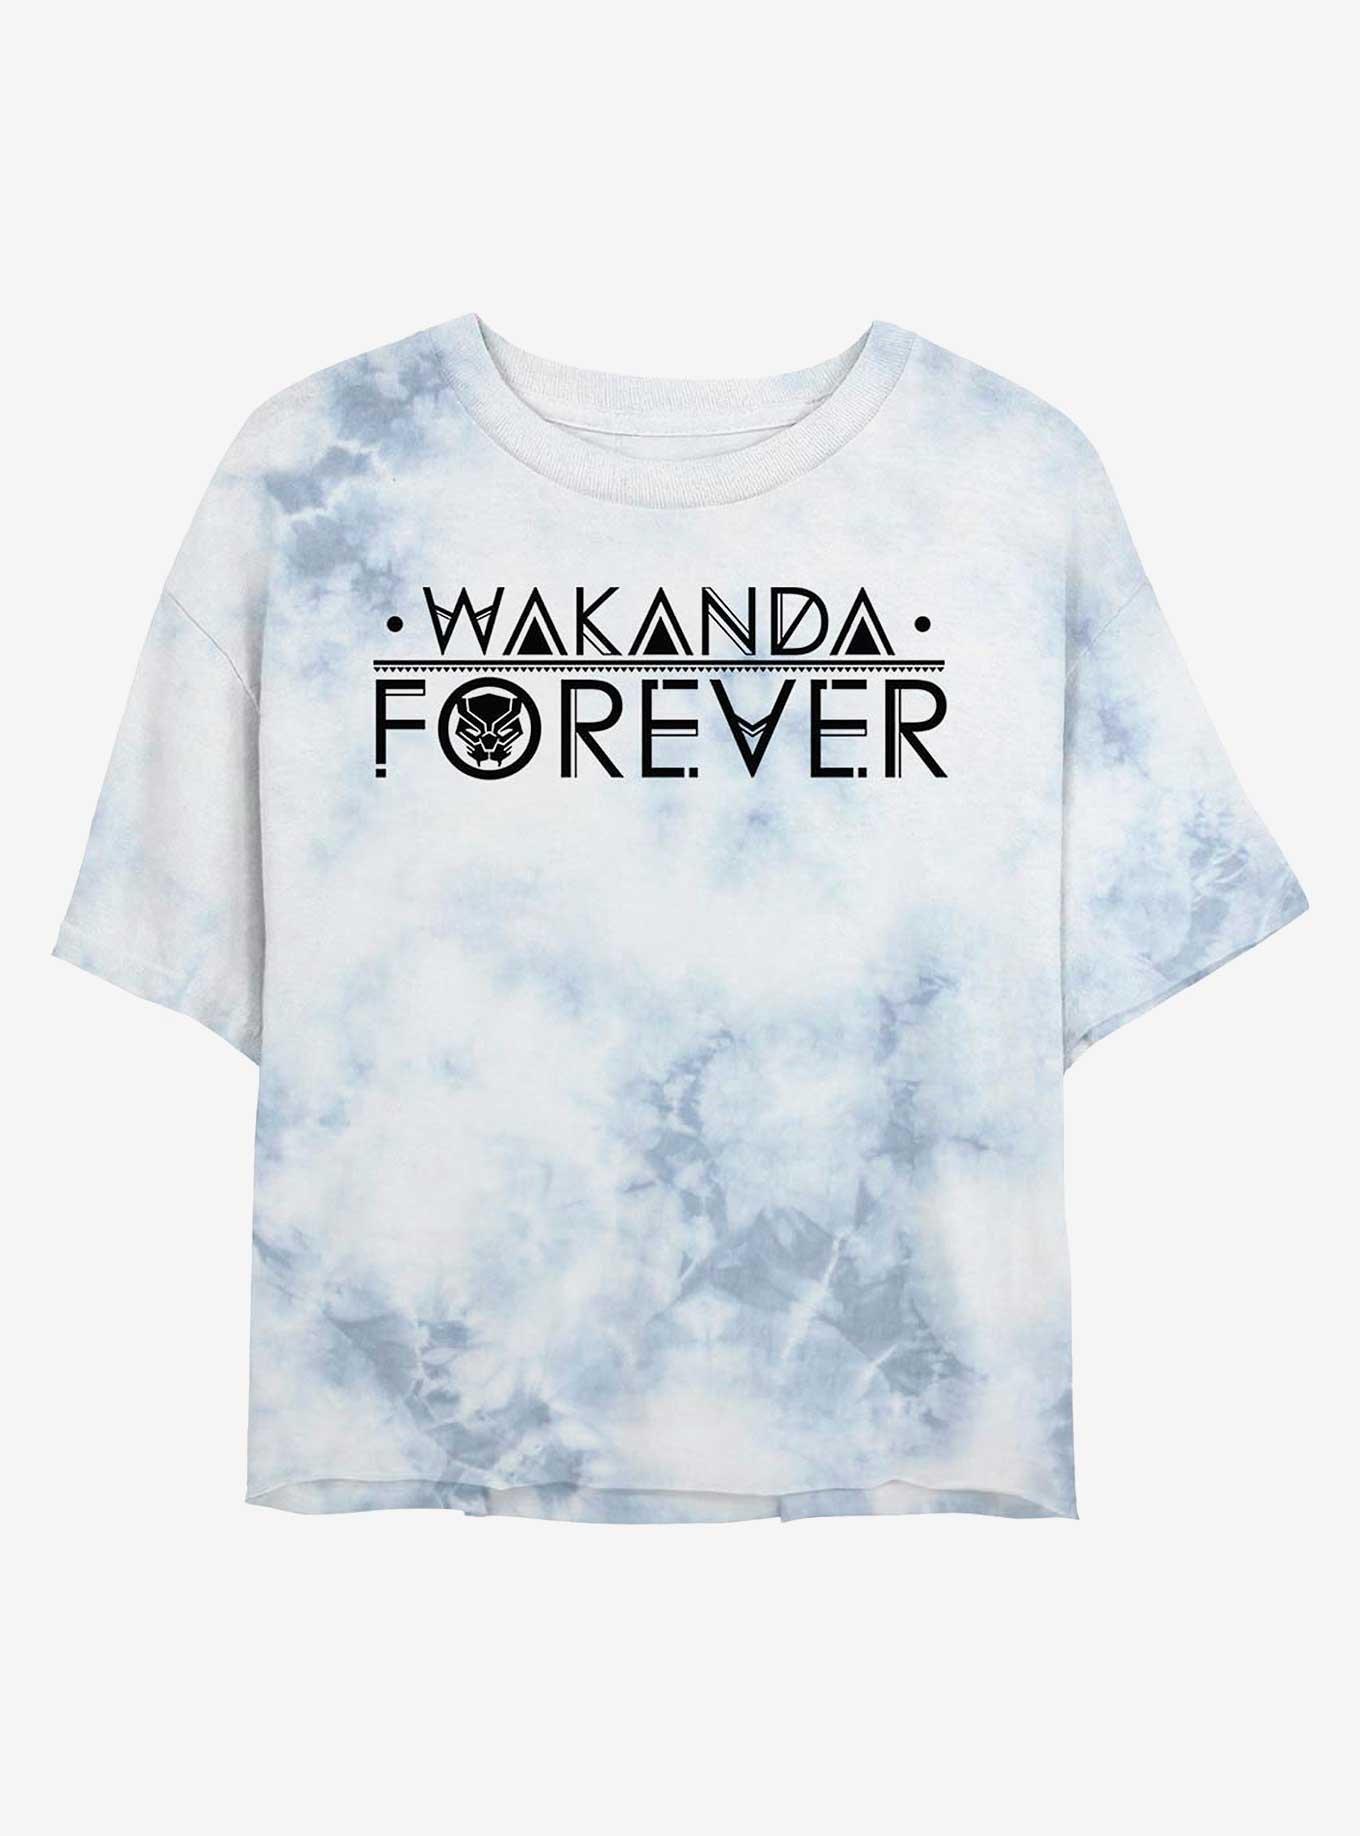 Marvel Black Panther Wakanda Forever Logo Tie-Dye Girls Crop T-Shirt, WHITEBLUE, hi-res